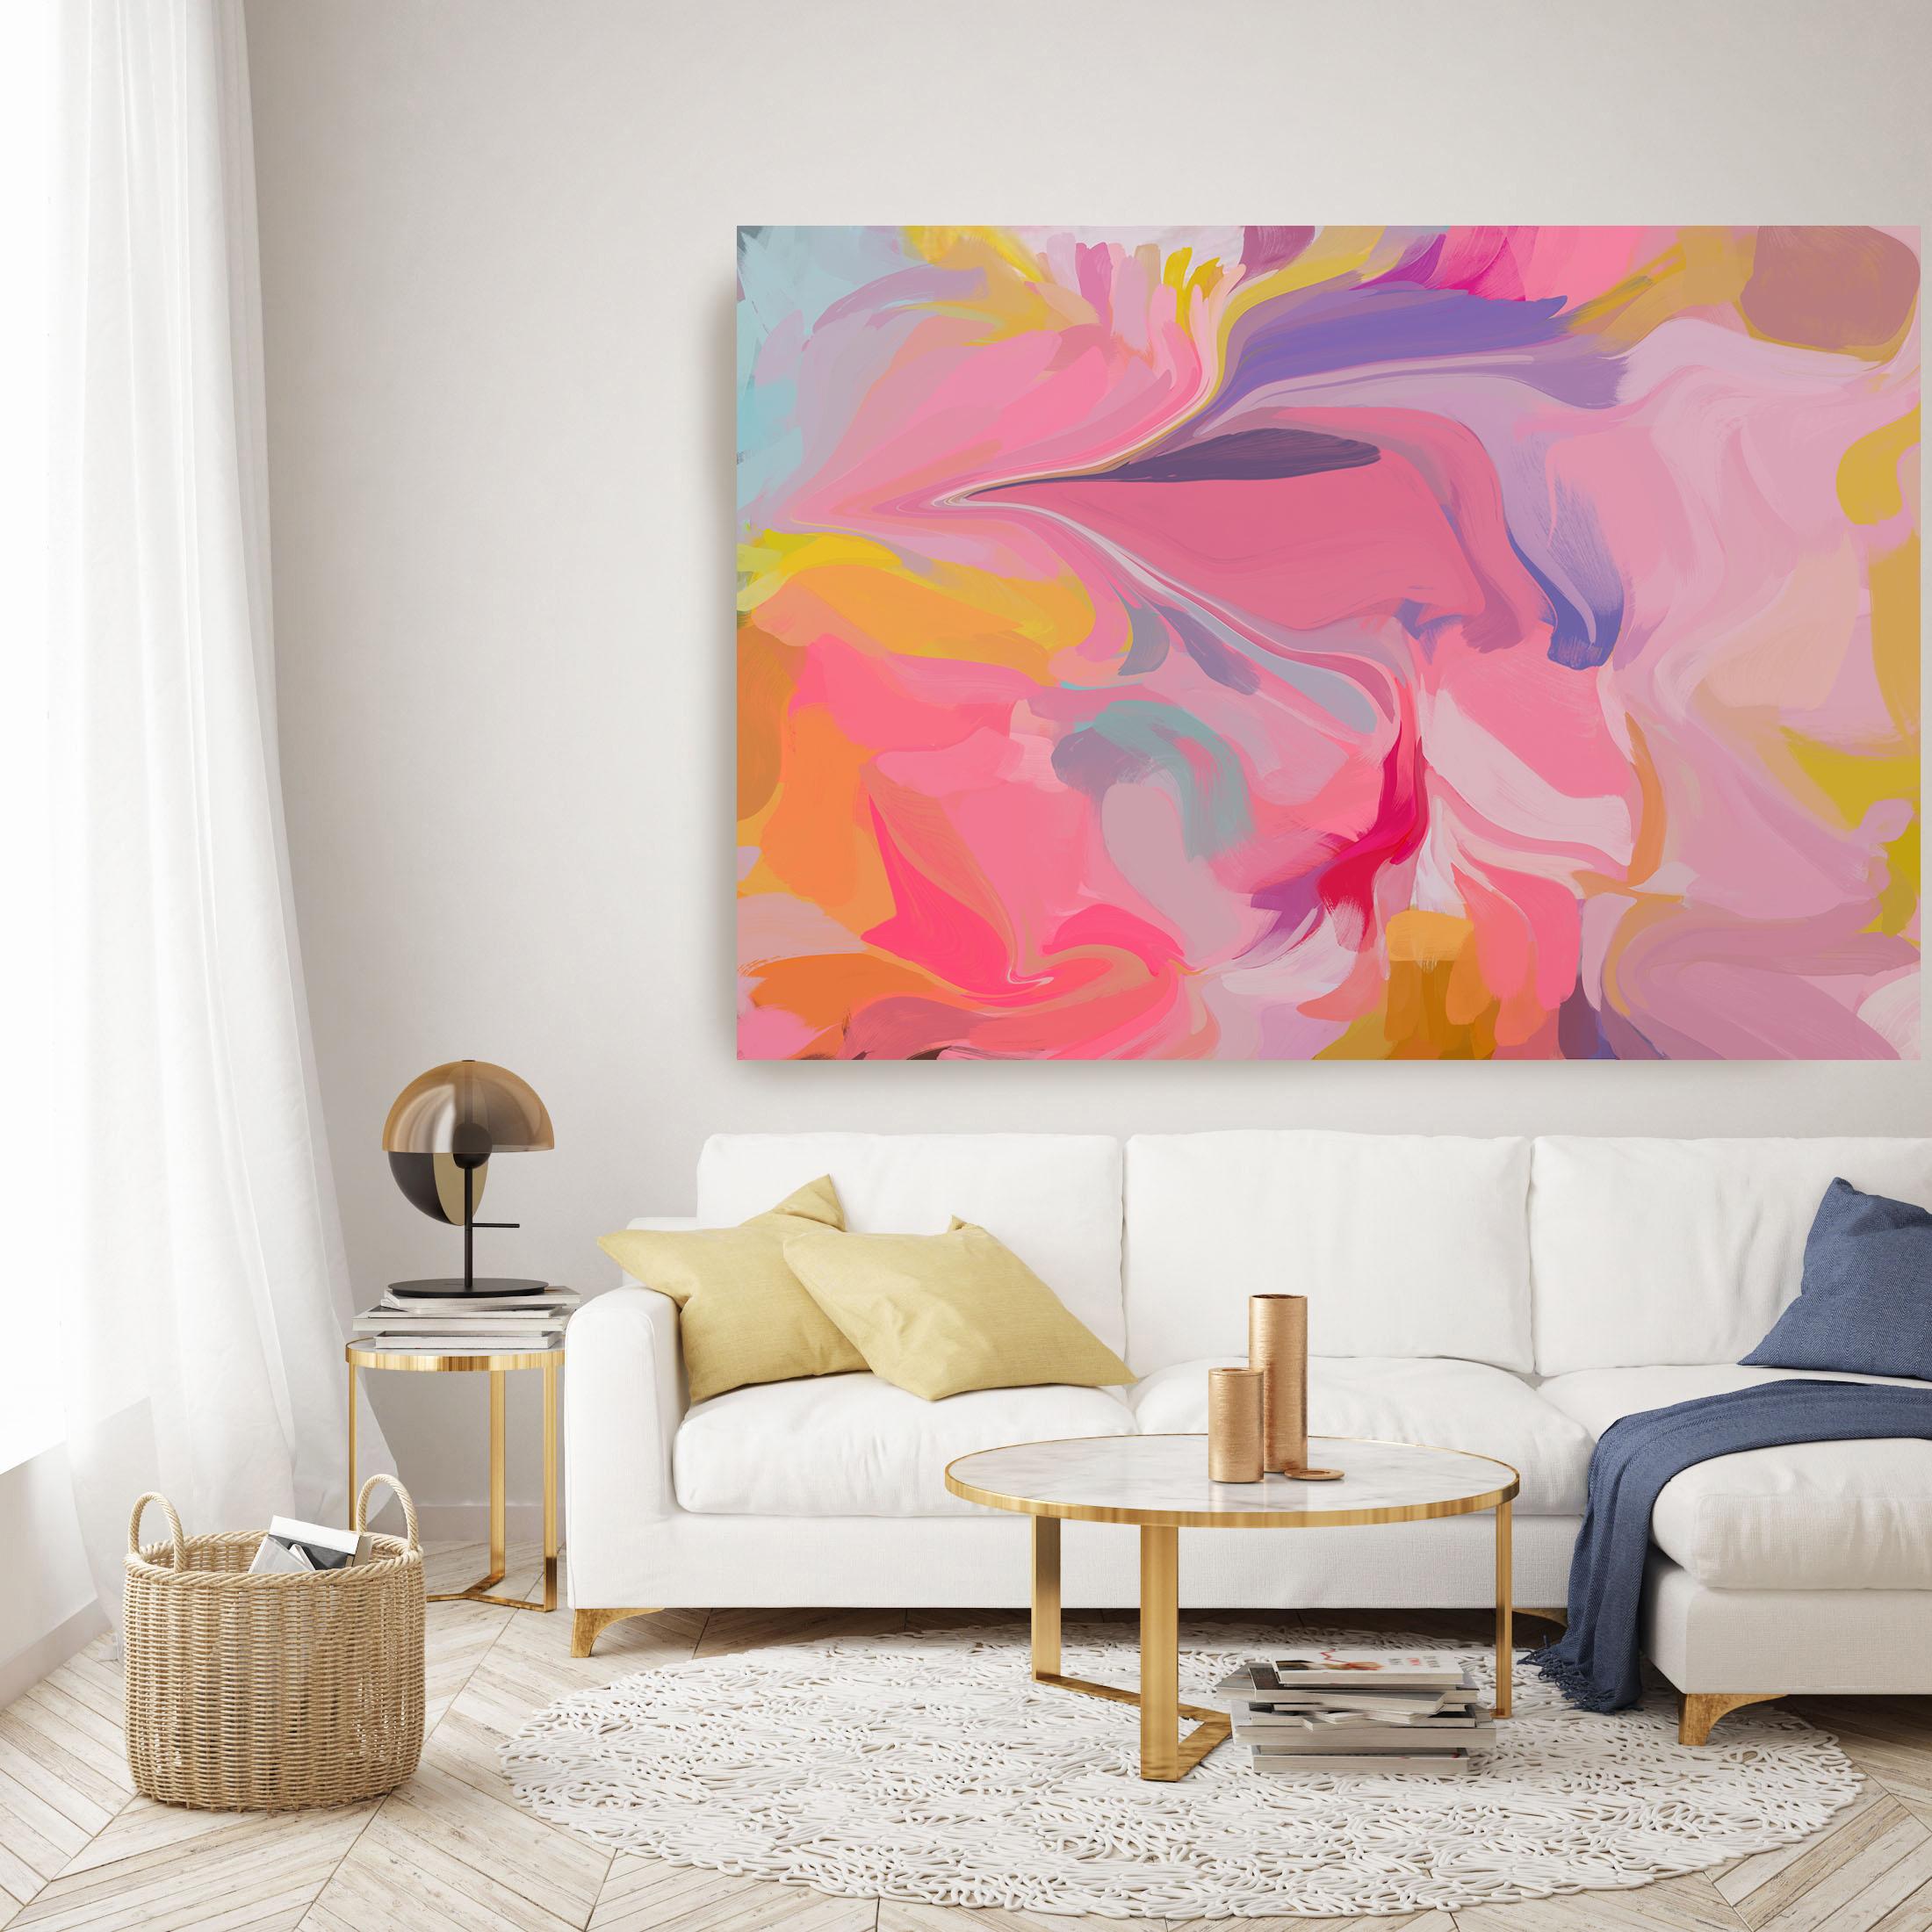 Abstract Painting Irena Orlov - Peinture abstraite rose et jaune sur toile technique mixte 38x56 po., Perspective esthétique